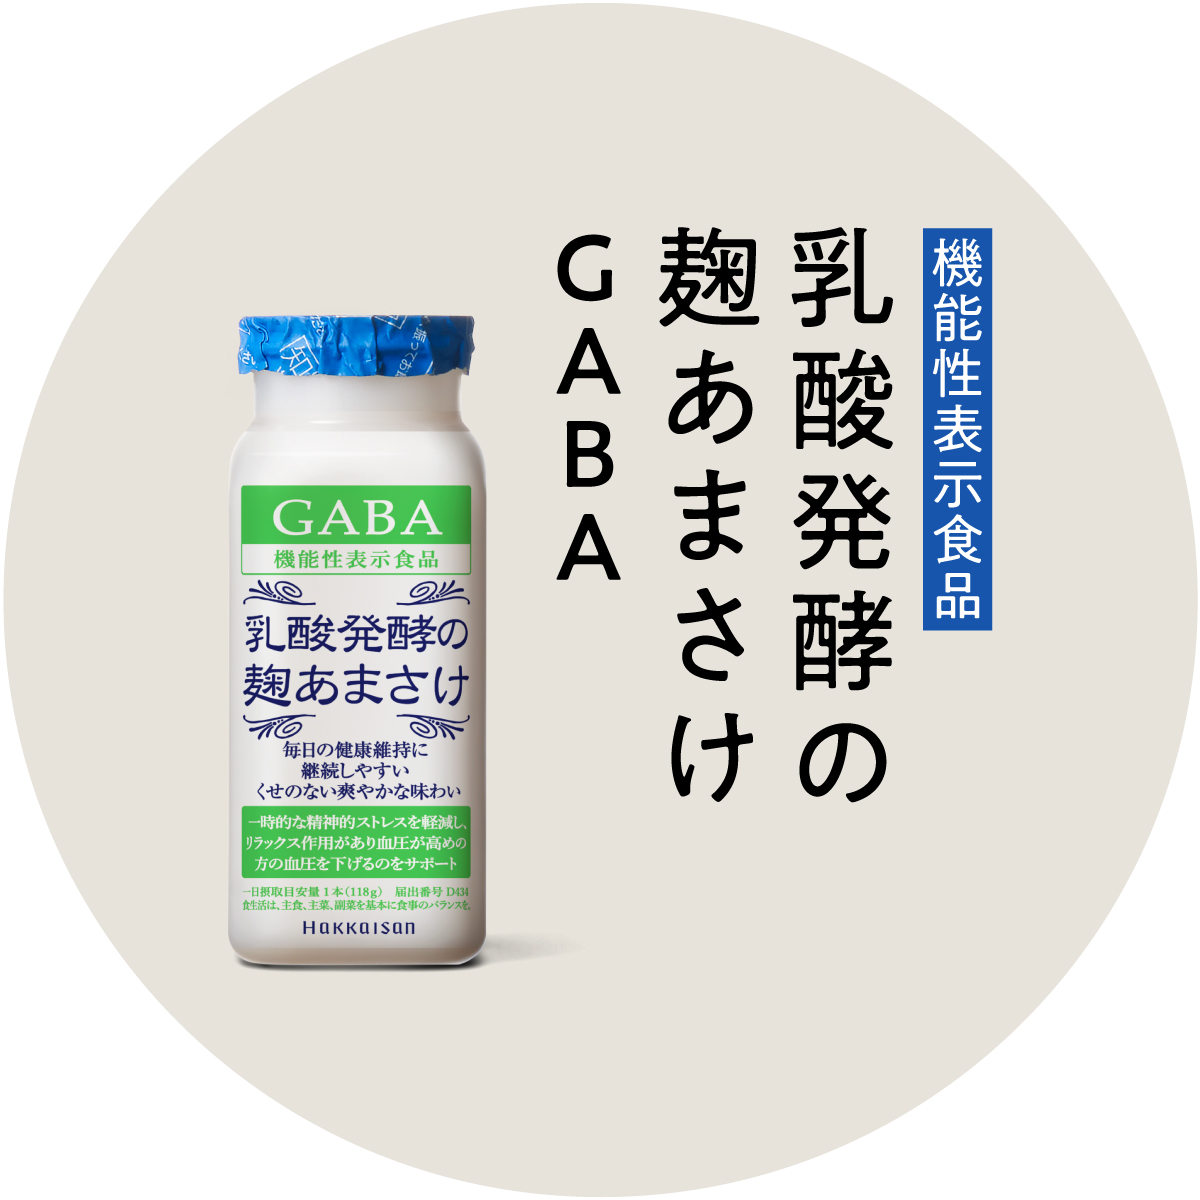 機能性表示食品 乳酸発酵の麹あまさけGABA